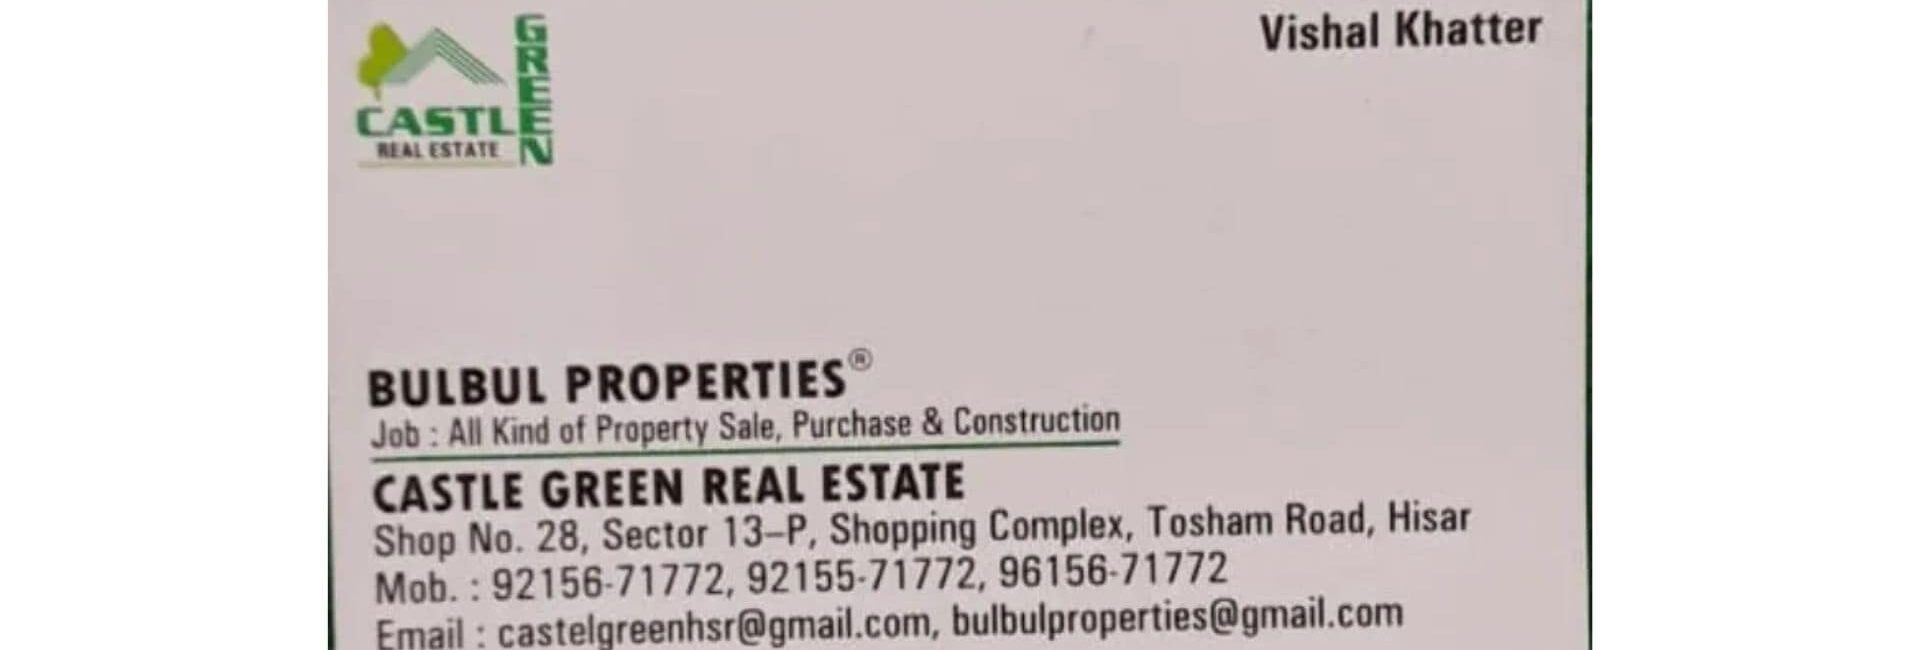 Bulbul Properties - Real Estate Agent in Hisar